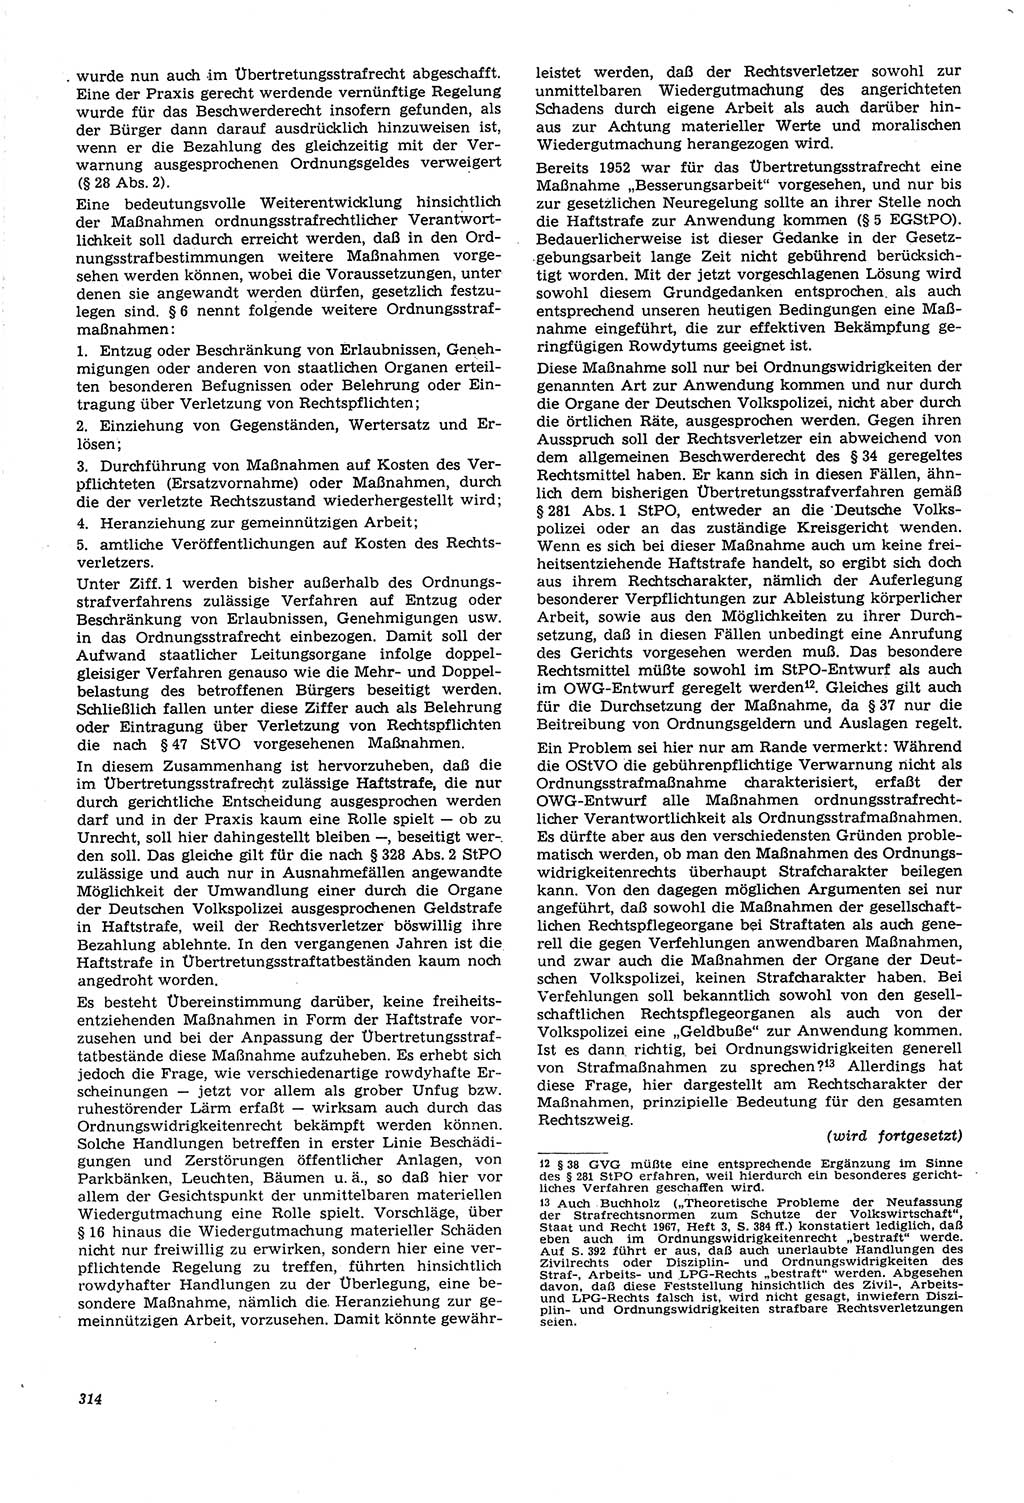 Neue Justiz (NJ), Zeitschrift für Recht und Rechtswissenschaft [Deutsche Demokratische Republik (DDR)], 21. Jahrgang 1967, Seite 314 (NJ DDR 1967, S. 314)